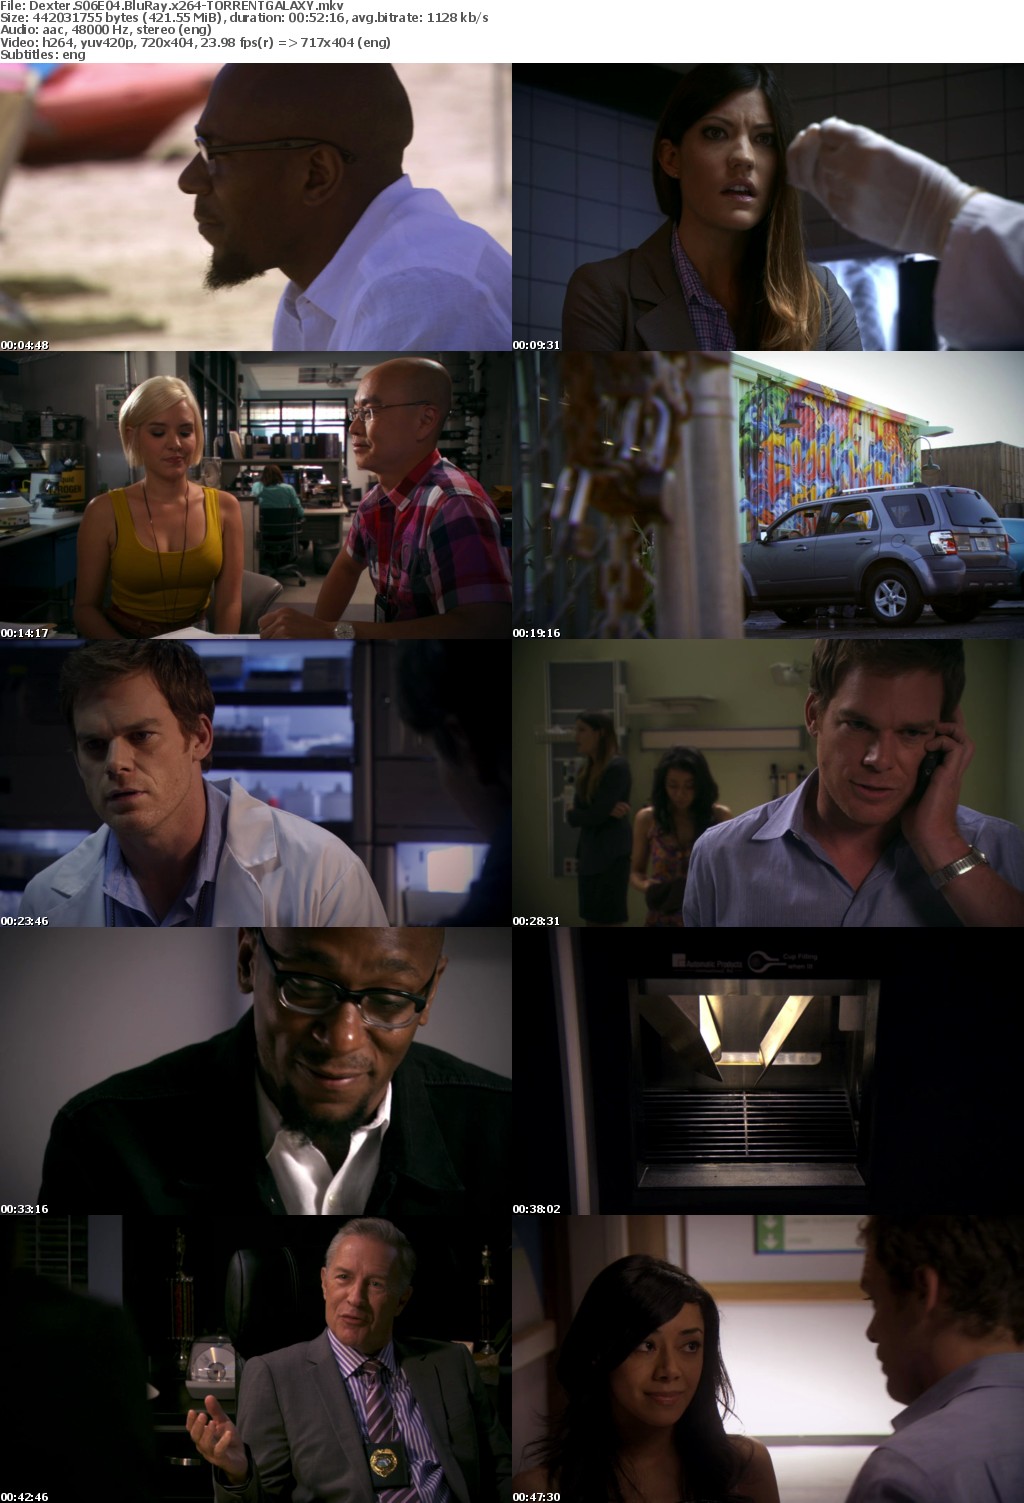 Dexter S06E04 BluRay x264-GALAXY